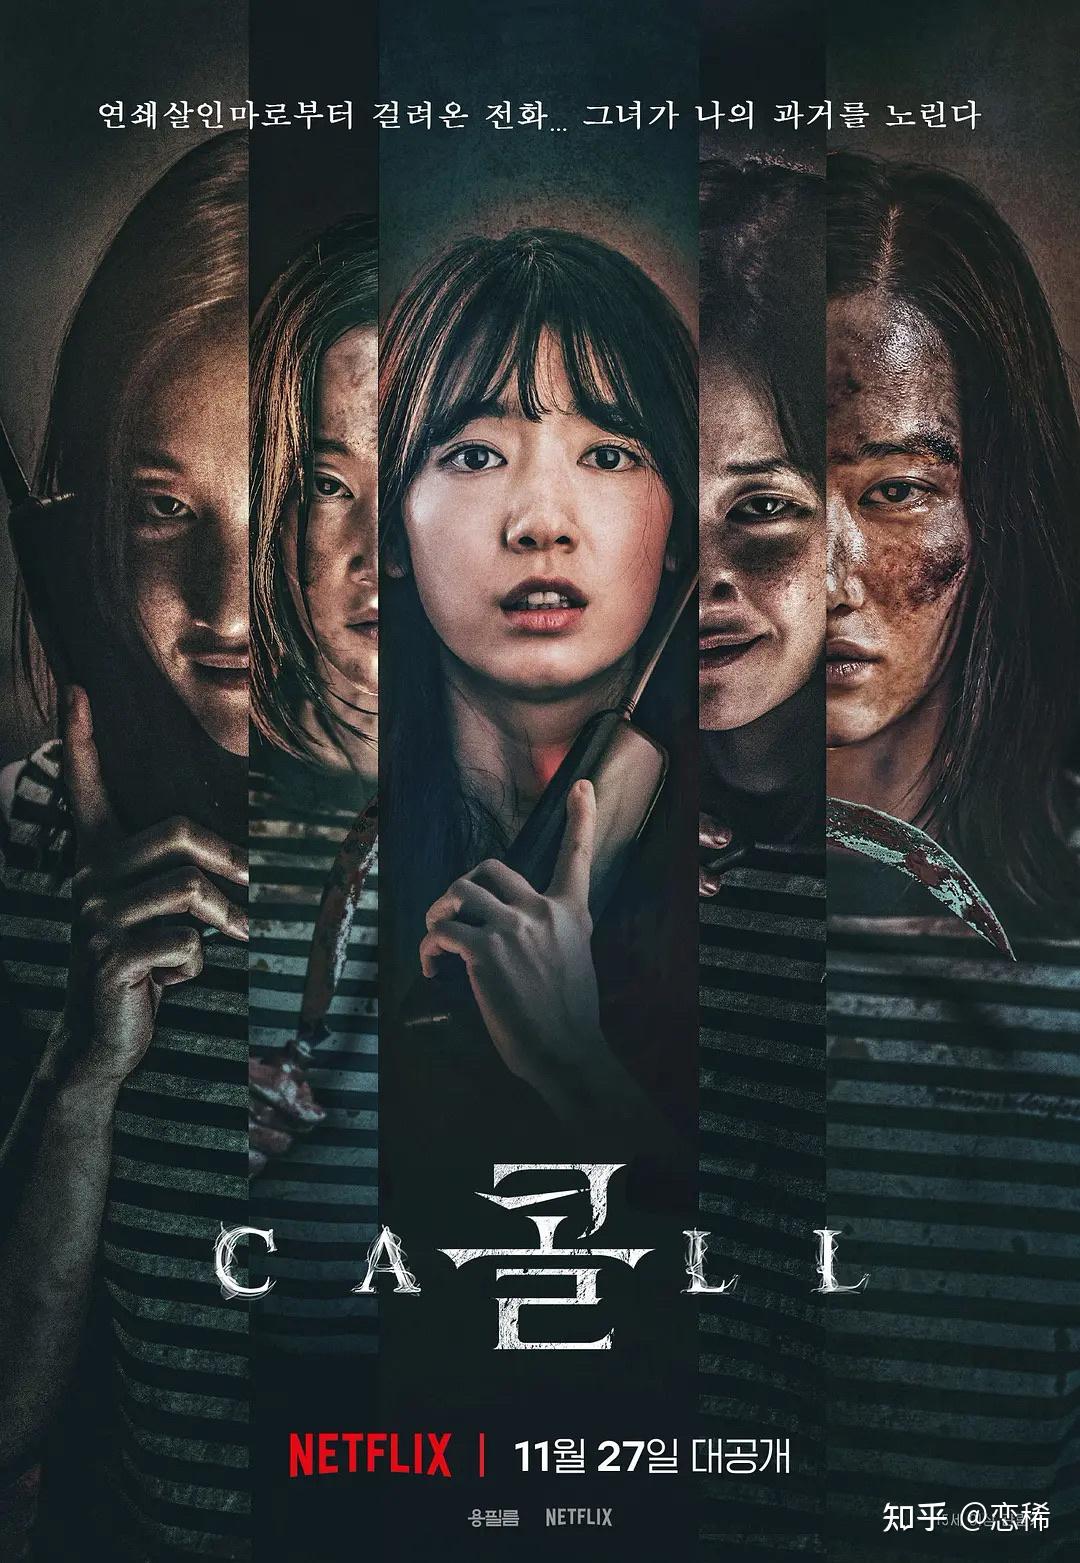 9部韩国惊悚动作犯罪类电影推荐,豆瓣评分均在75以上的高分电影